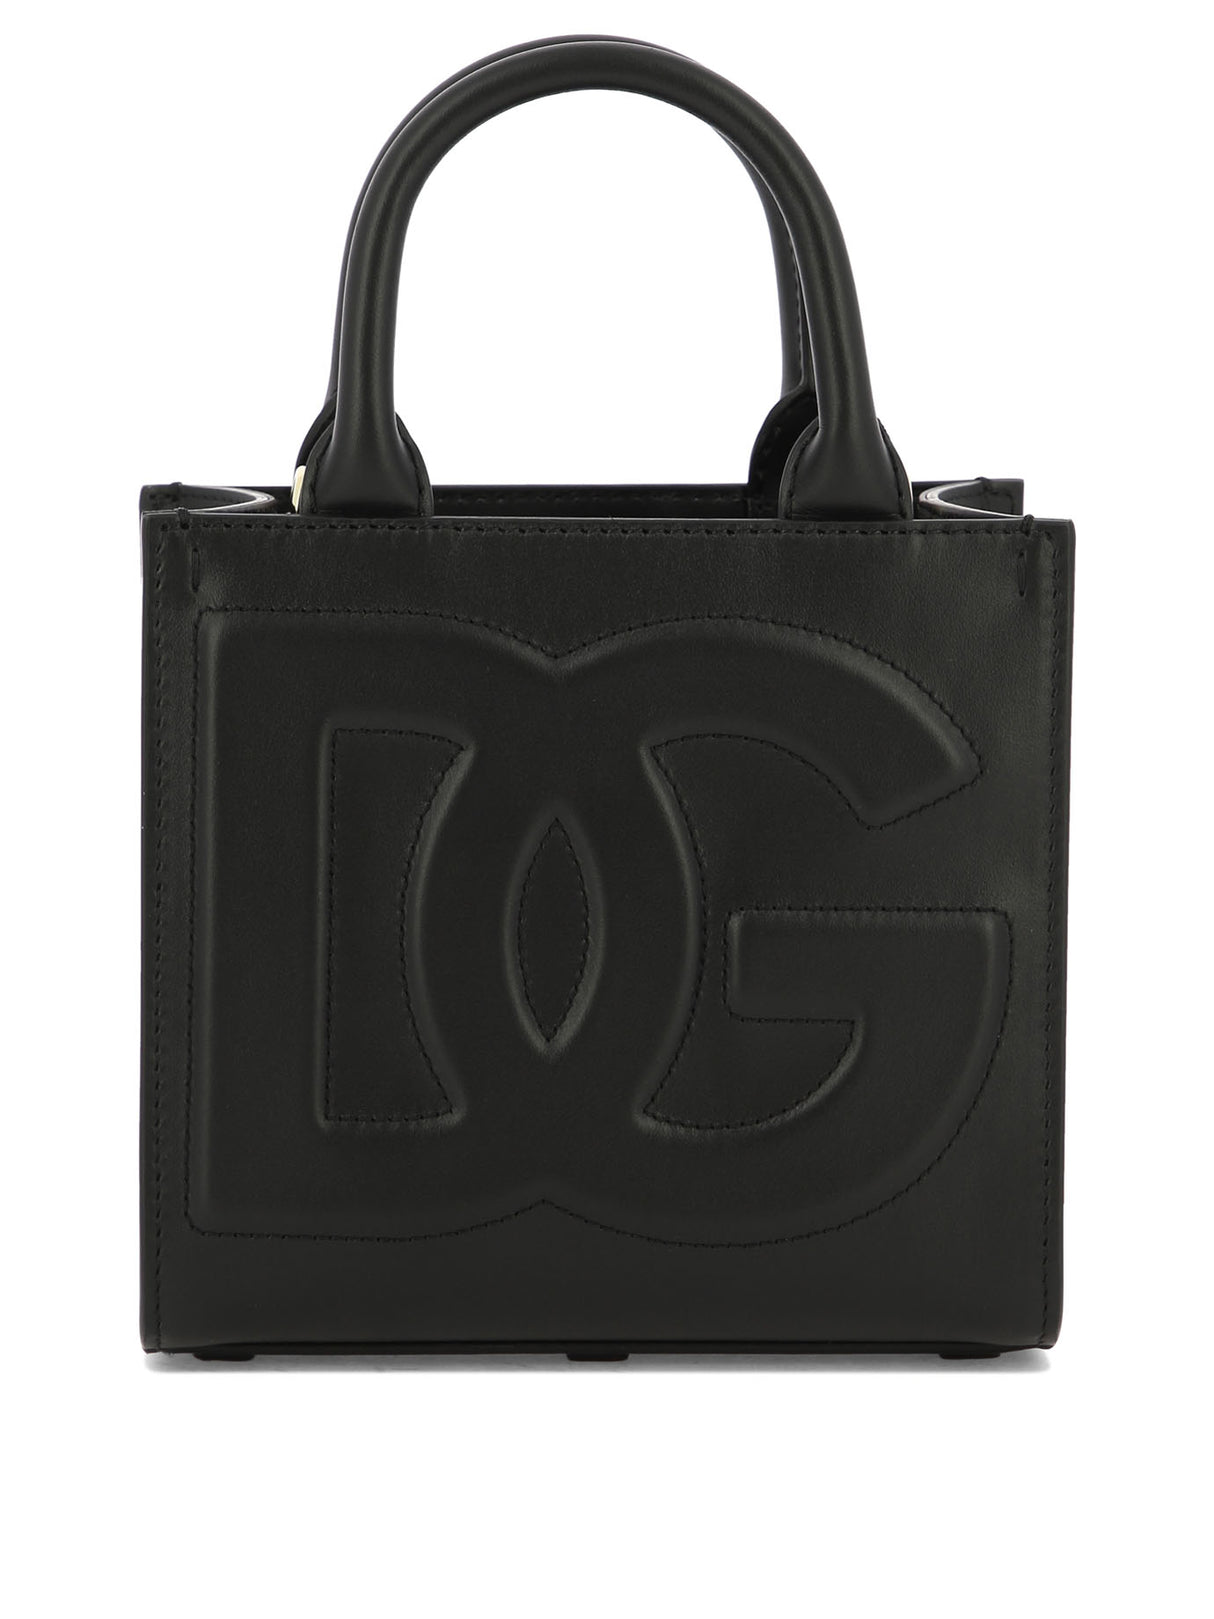 DOLCE & GABBANA Black Leather Shoulder Handbag for Women - SS24 Collection